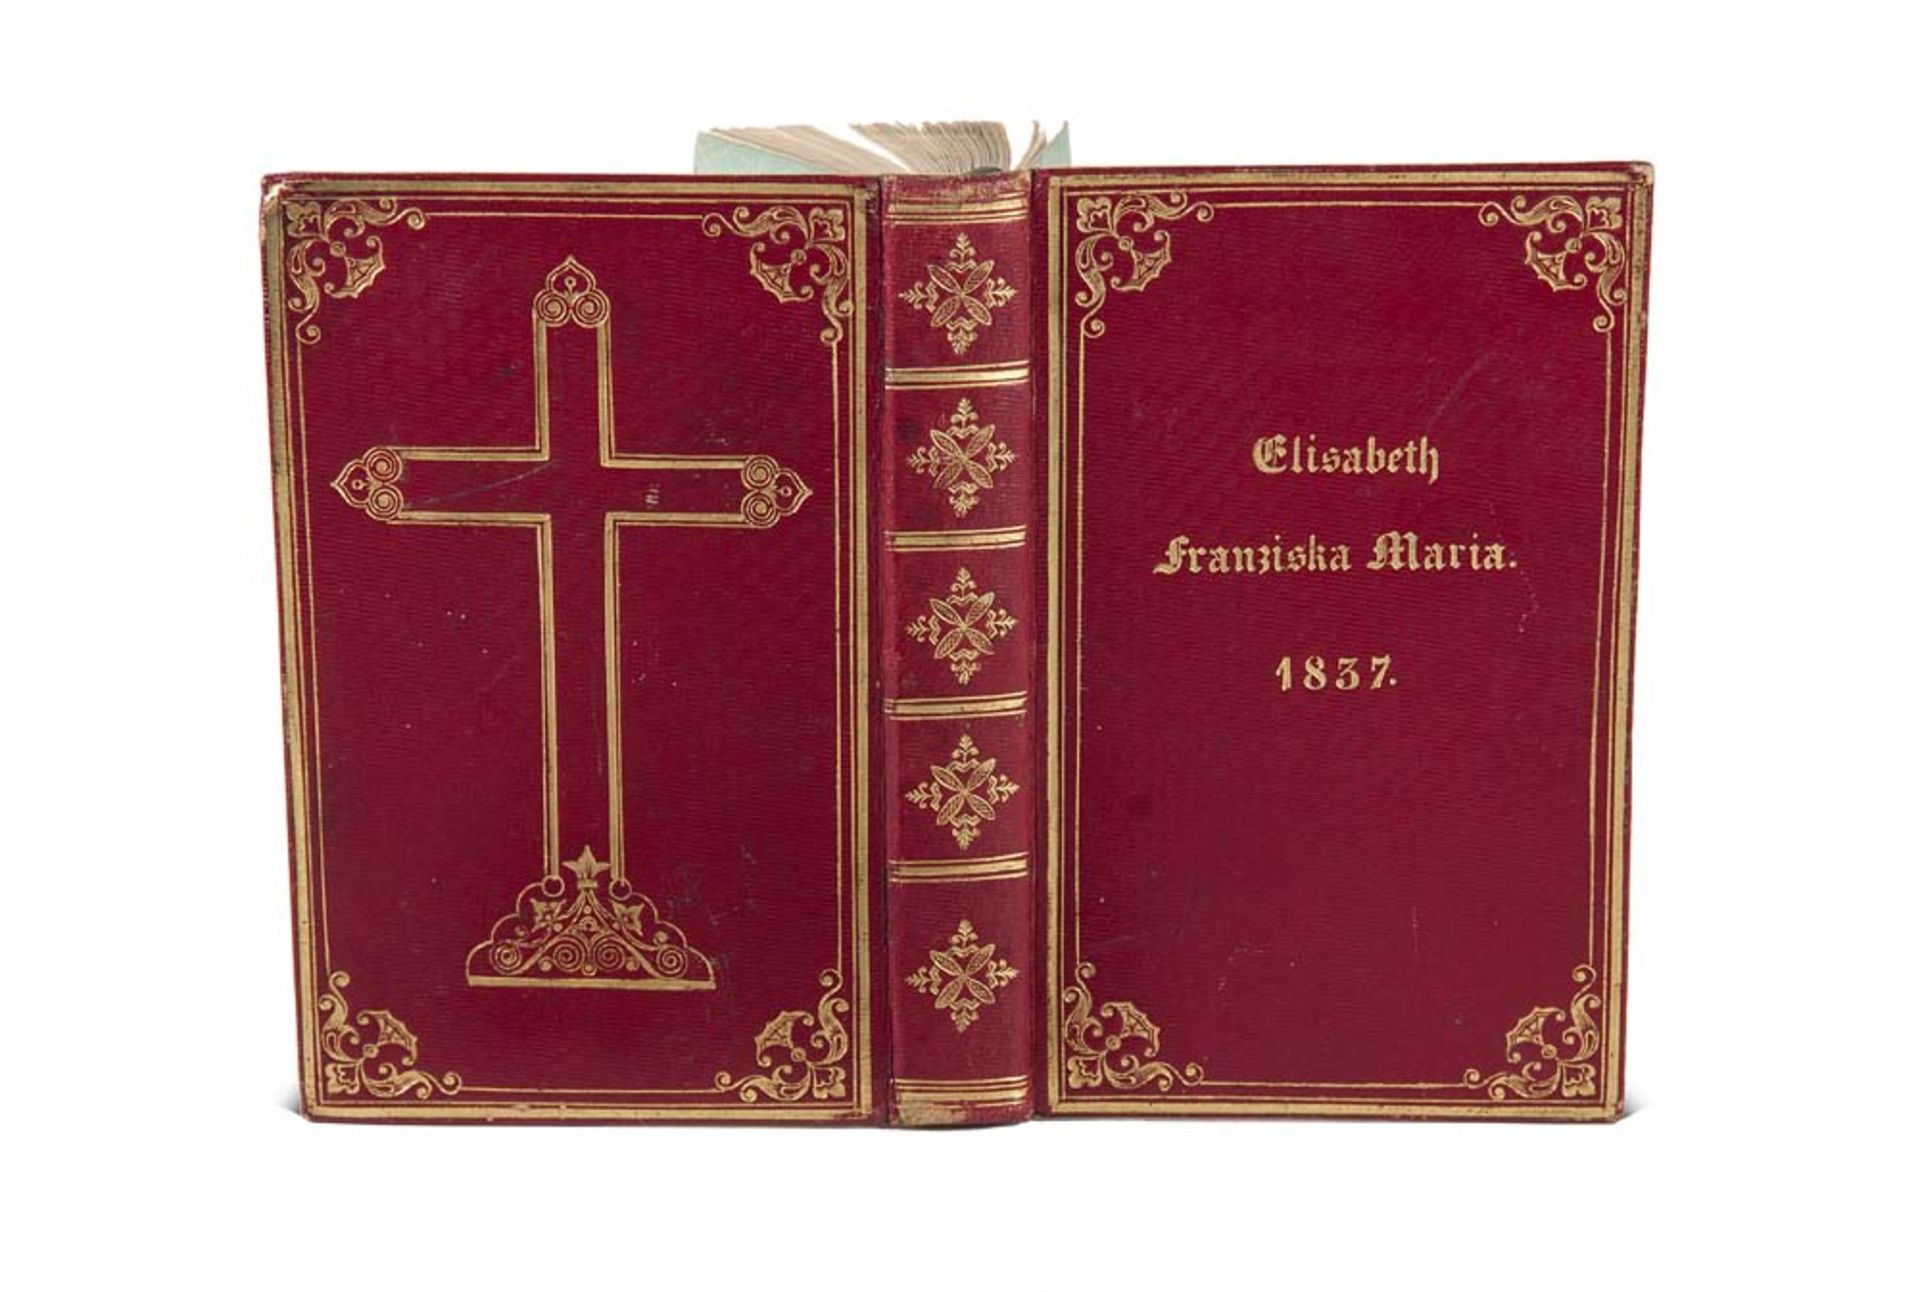 Einbände - - Gesangbuch der Elisabeth Franziska Maria. 1837. Ohne Titel. 338 S. Roter Ledereinband